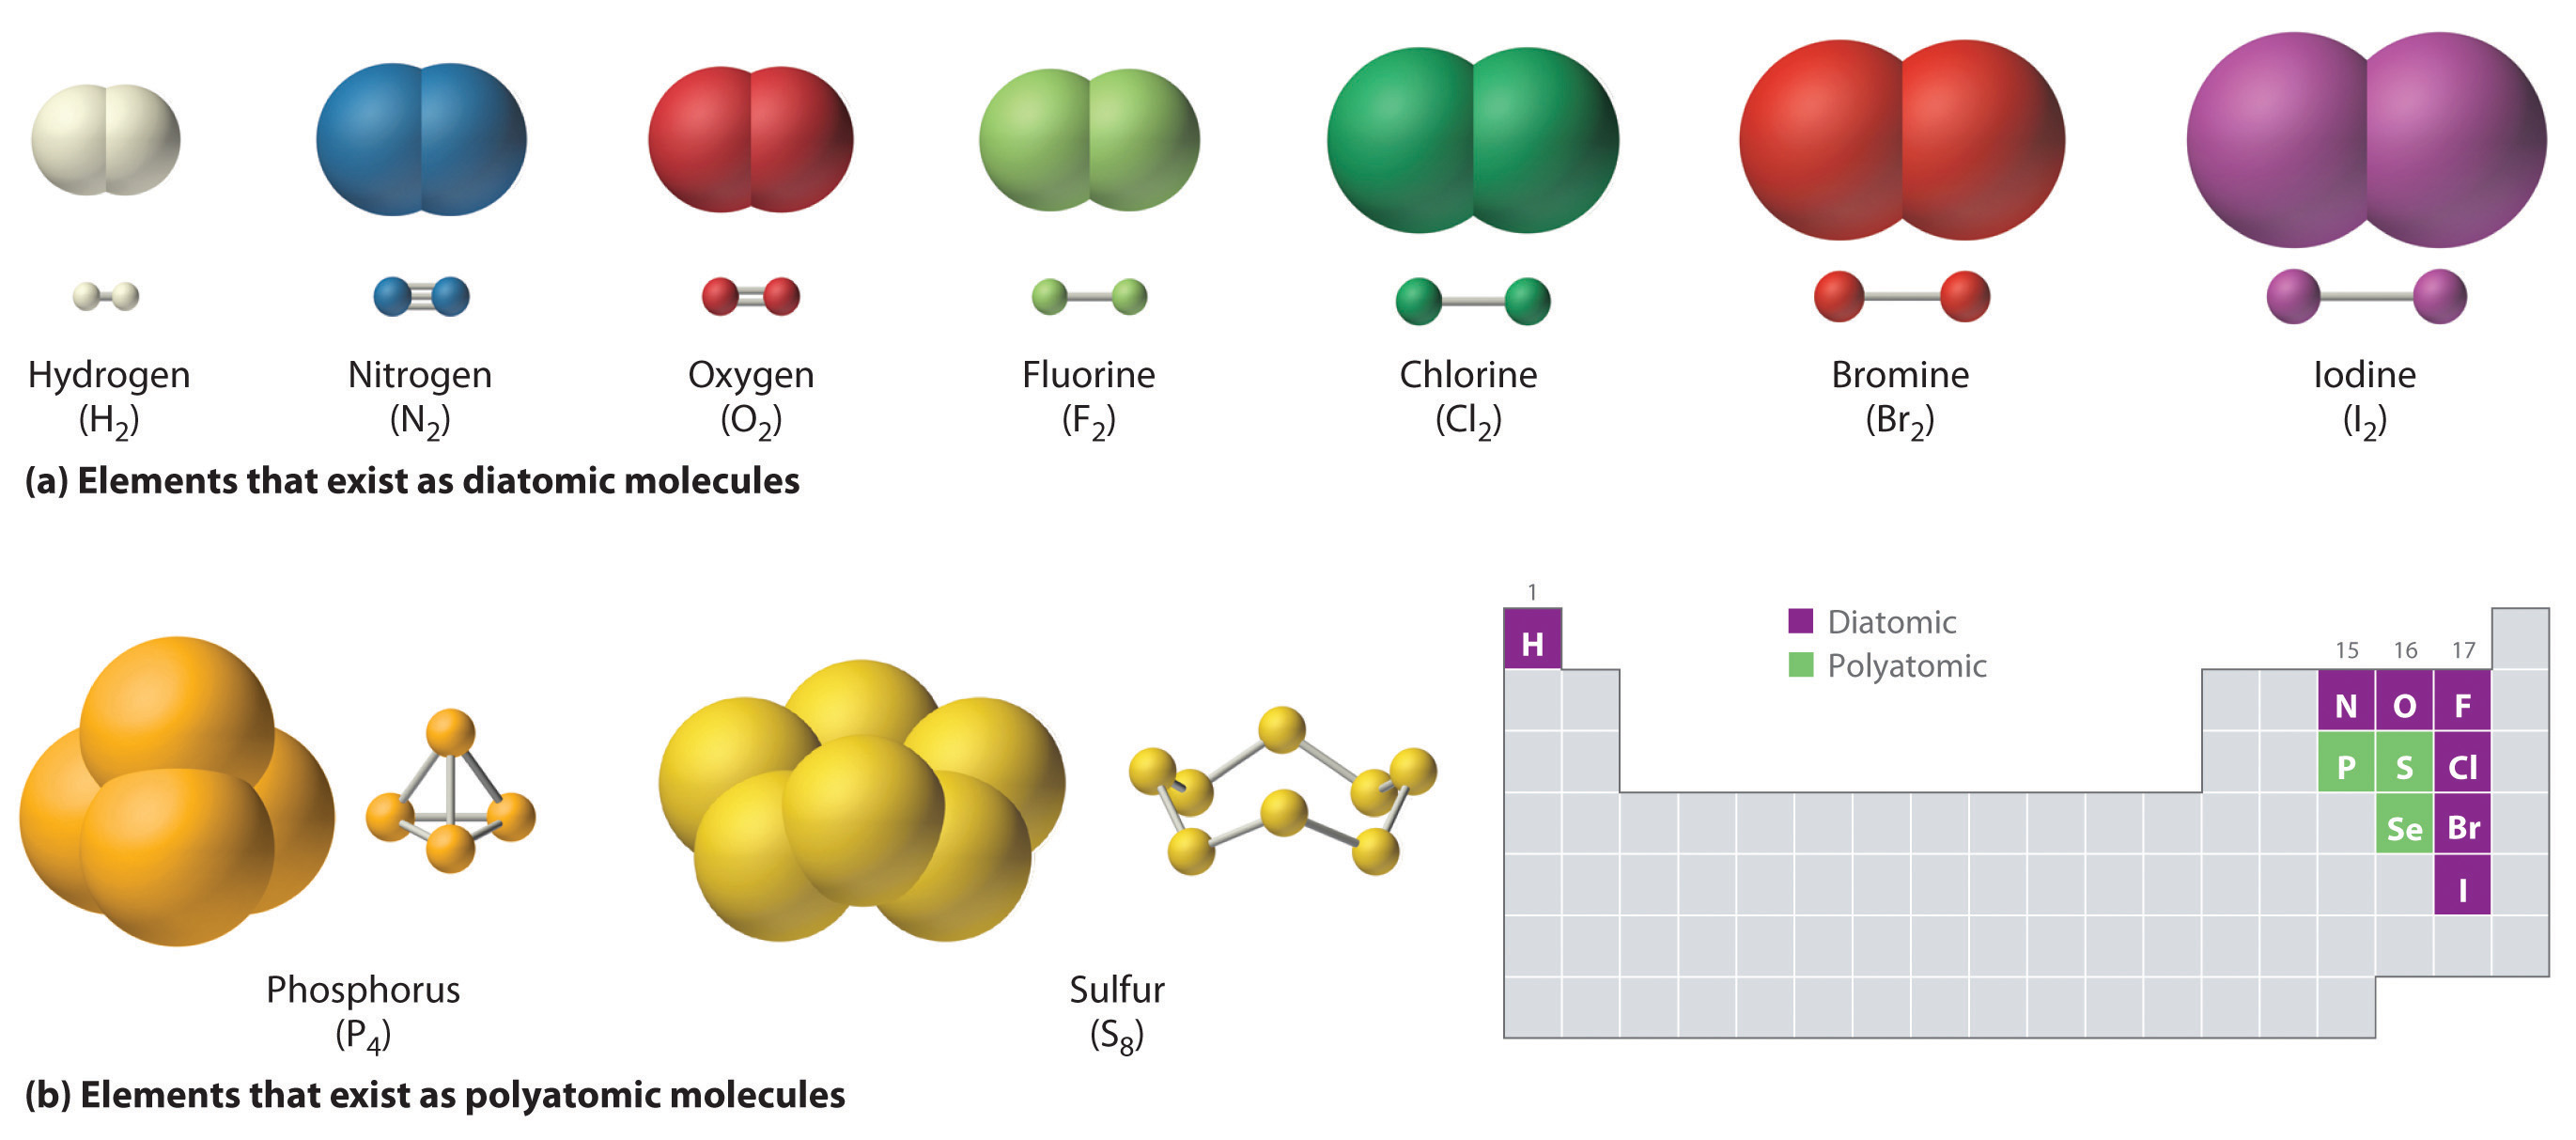 El hidrógeno, el nitrógeno, el oxígeno, el flúor, el cloro, el bromo y el yodo existen como moléculas diatómicas. El fósforo y el azufre existen como moléculas poliatómicas.